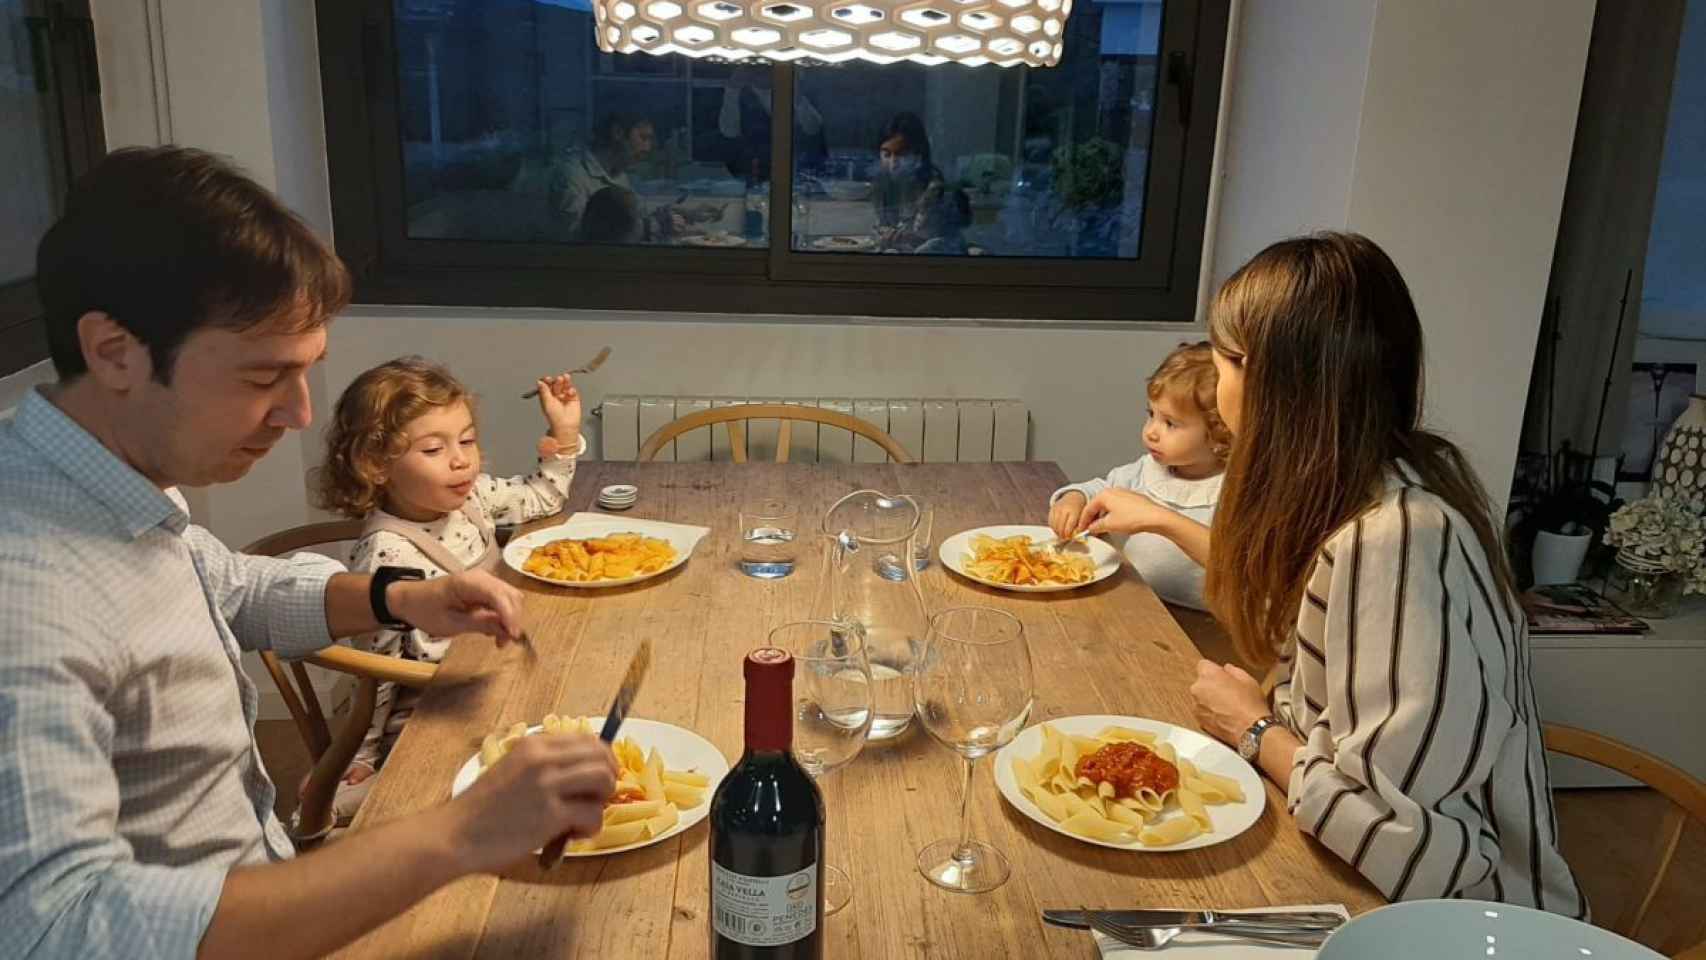 Familia consumiendo pasta / GRUPO GALLO